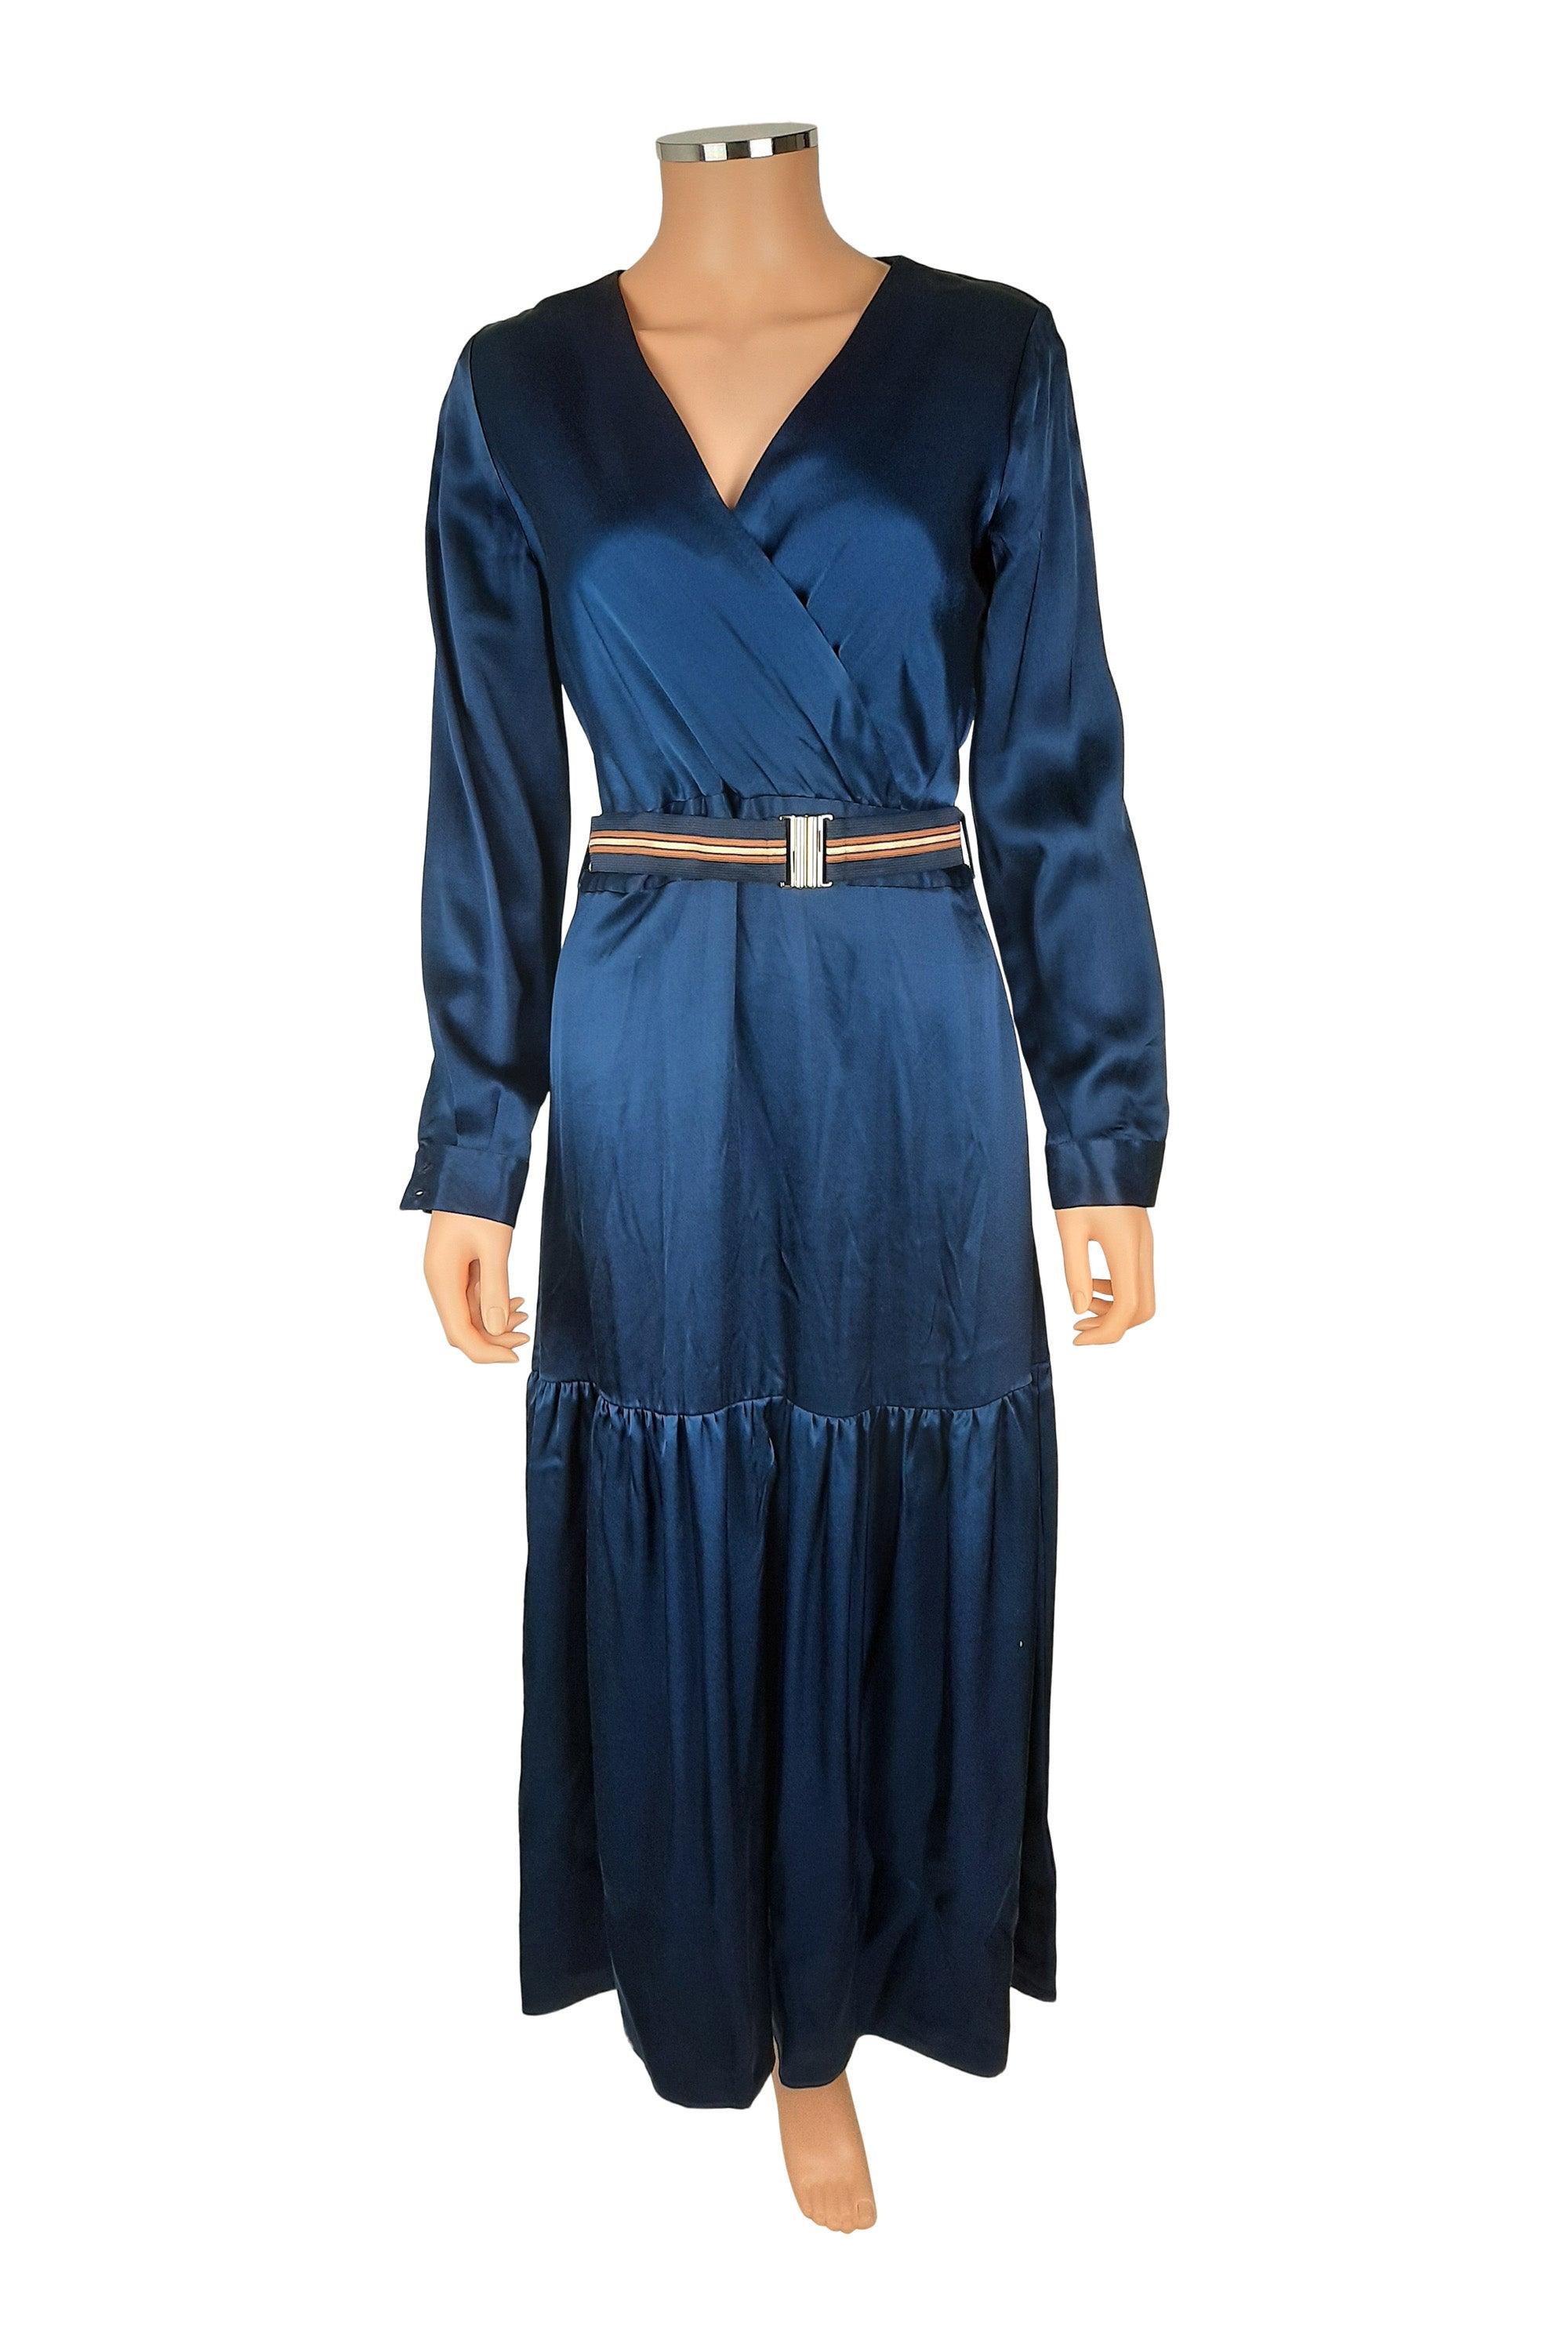 Kleedje Blauw Senso ( 7176 Lyna Navy ) - Delaere Womenswear